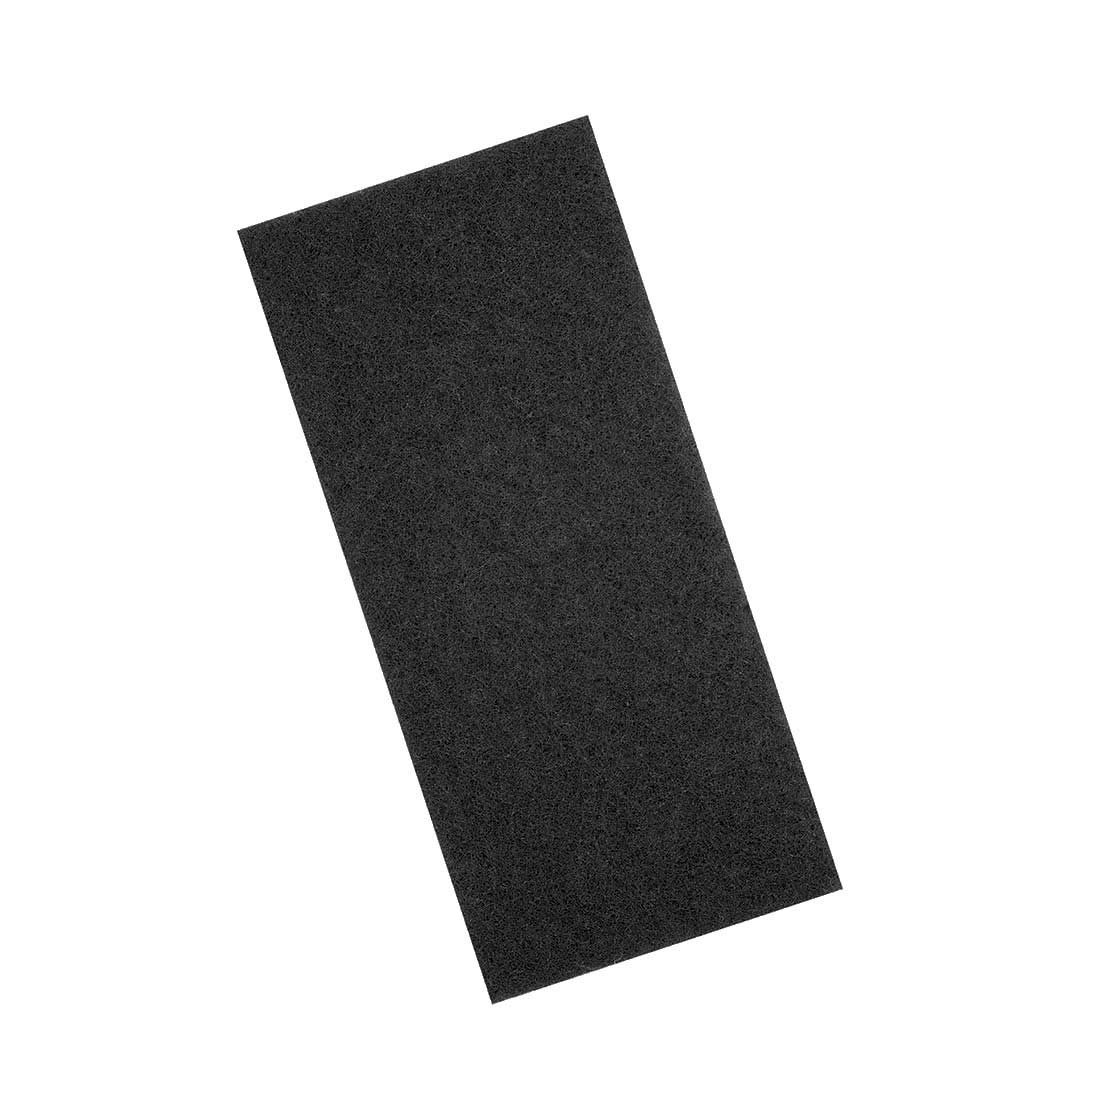 MENZER Polierpad 250 x 115 mm Handpads für Handschleifer, Polyester, 10 Stk., schwarz